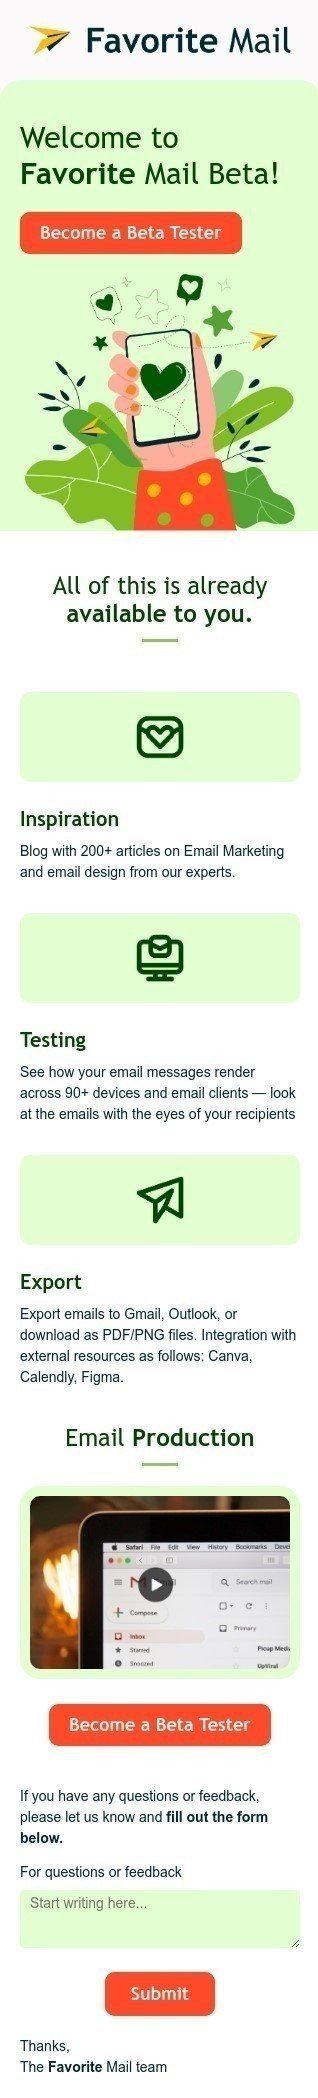 Шаблон листа «Ласкаво просимо до бета-версії «Улюблена пошта»» тематики Анонс для індустрії «ПЗ та Технології» мобільний вигляд